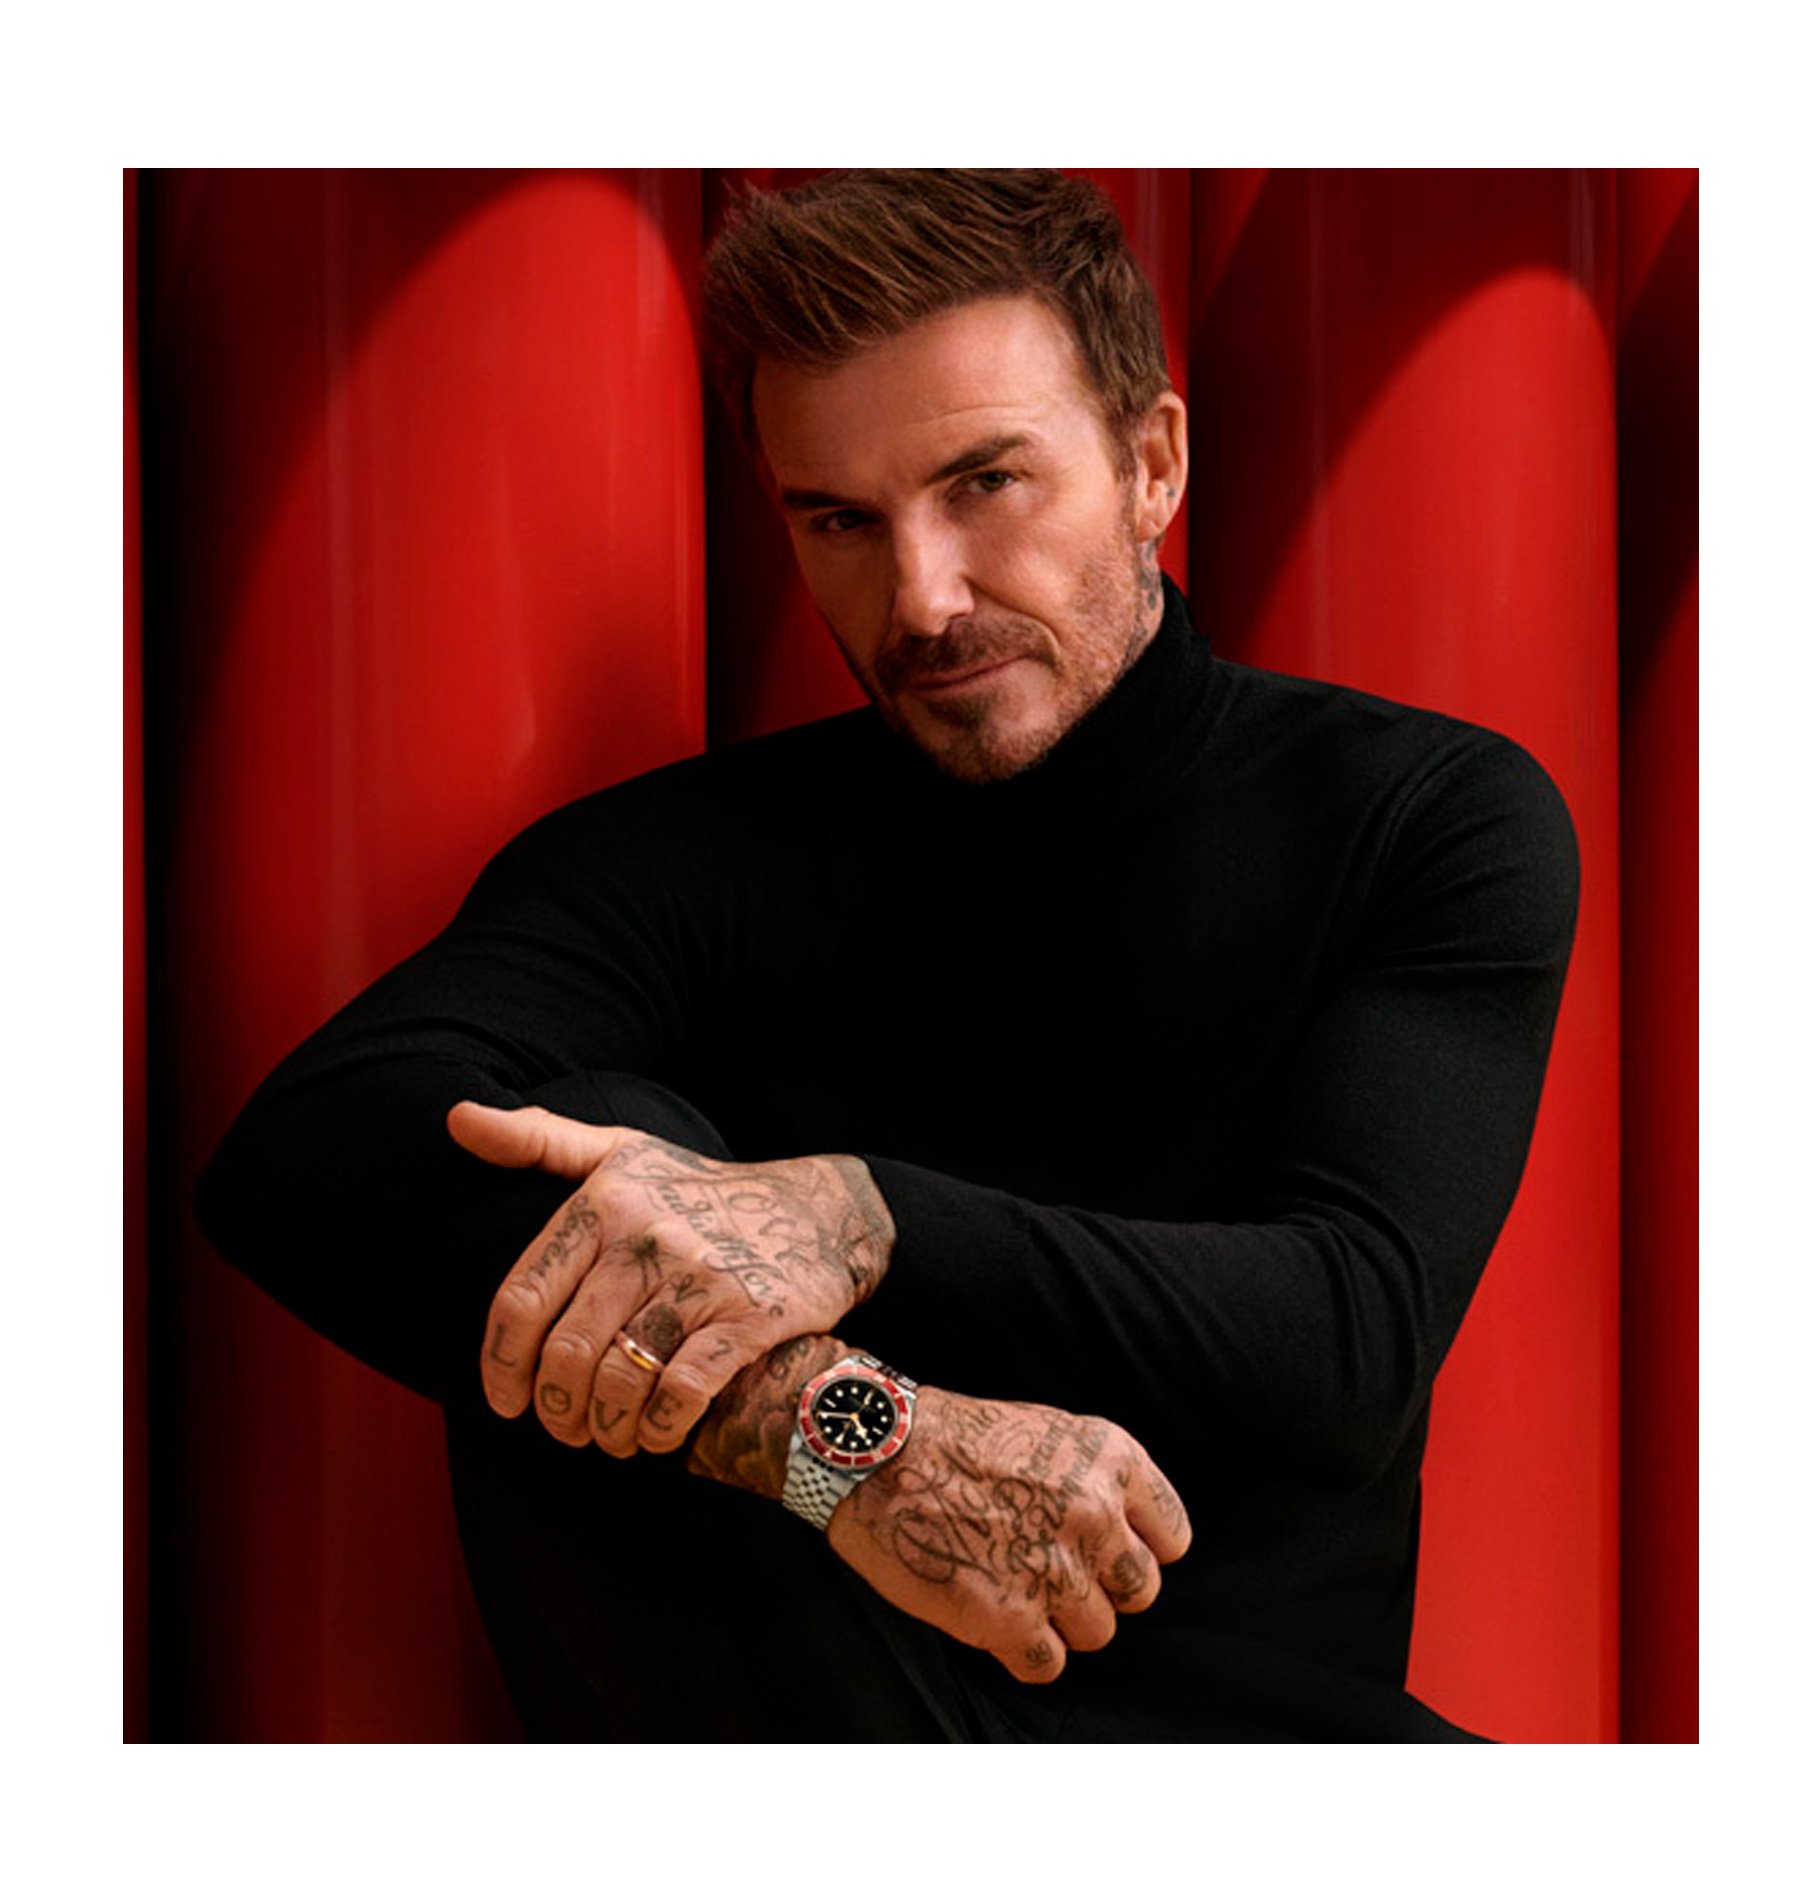 David Beckham es embajador de relojes Tudor en Joyería RABAT - Distribuidor oficial